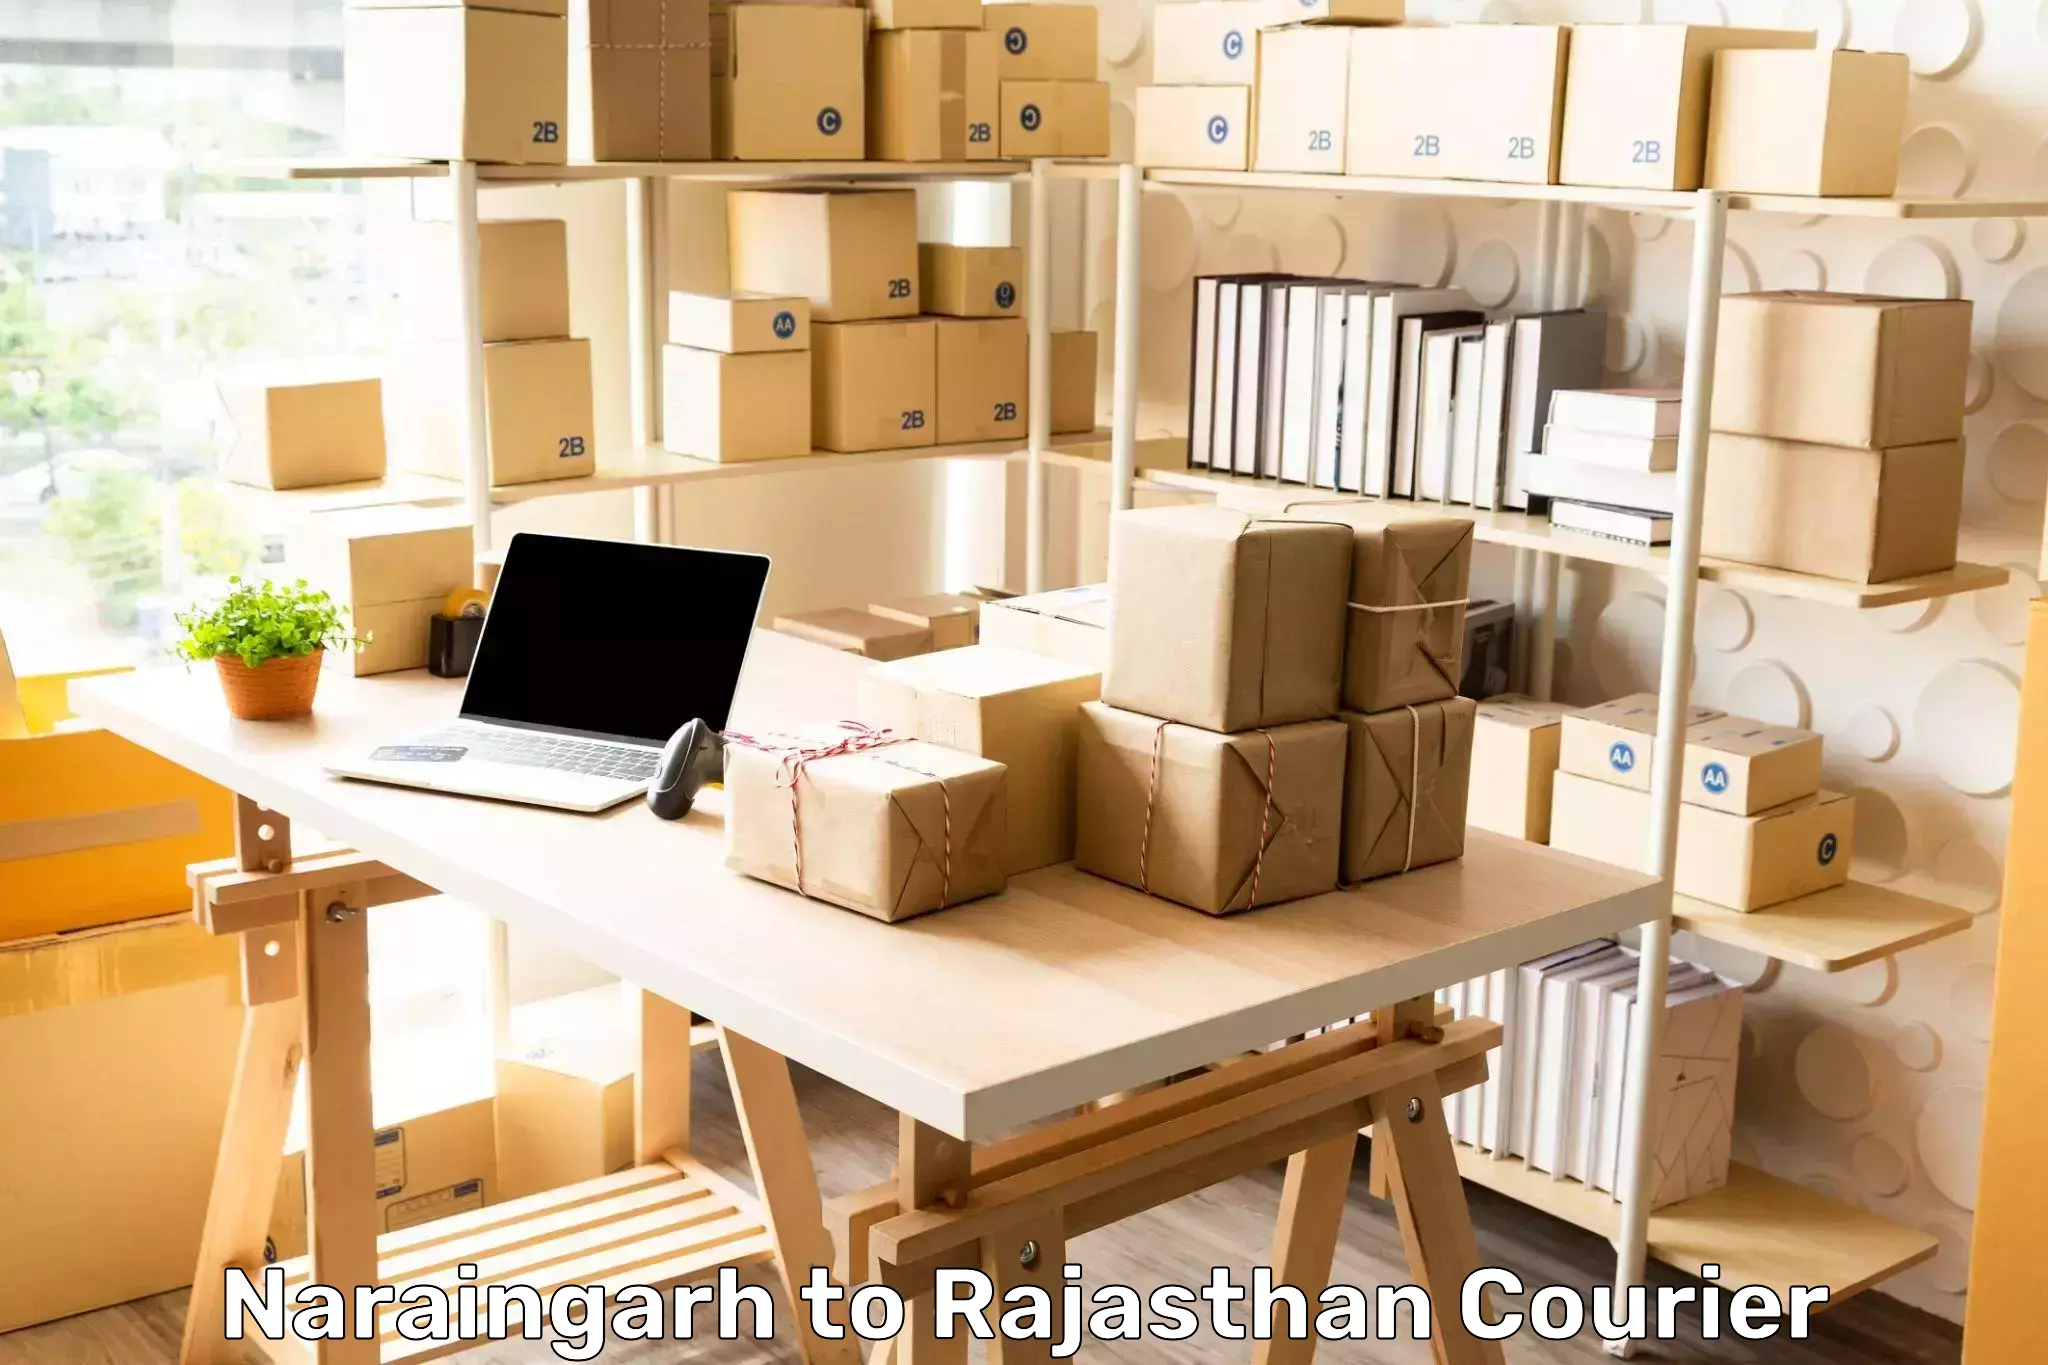 Package forwarding Naraingarh to Rajasthan